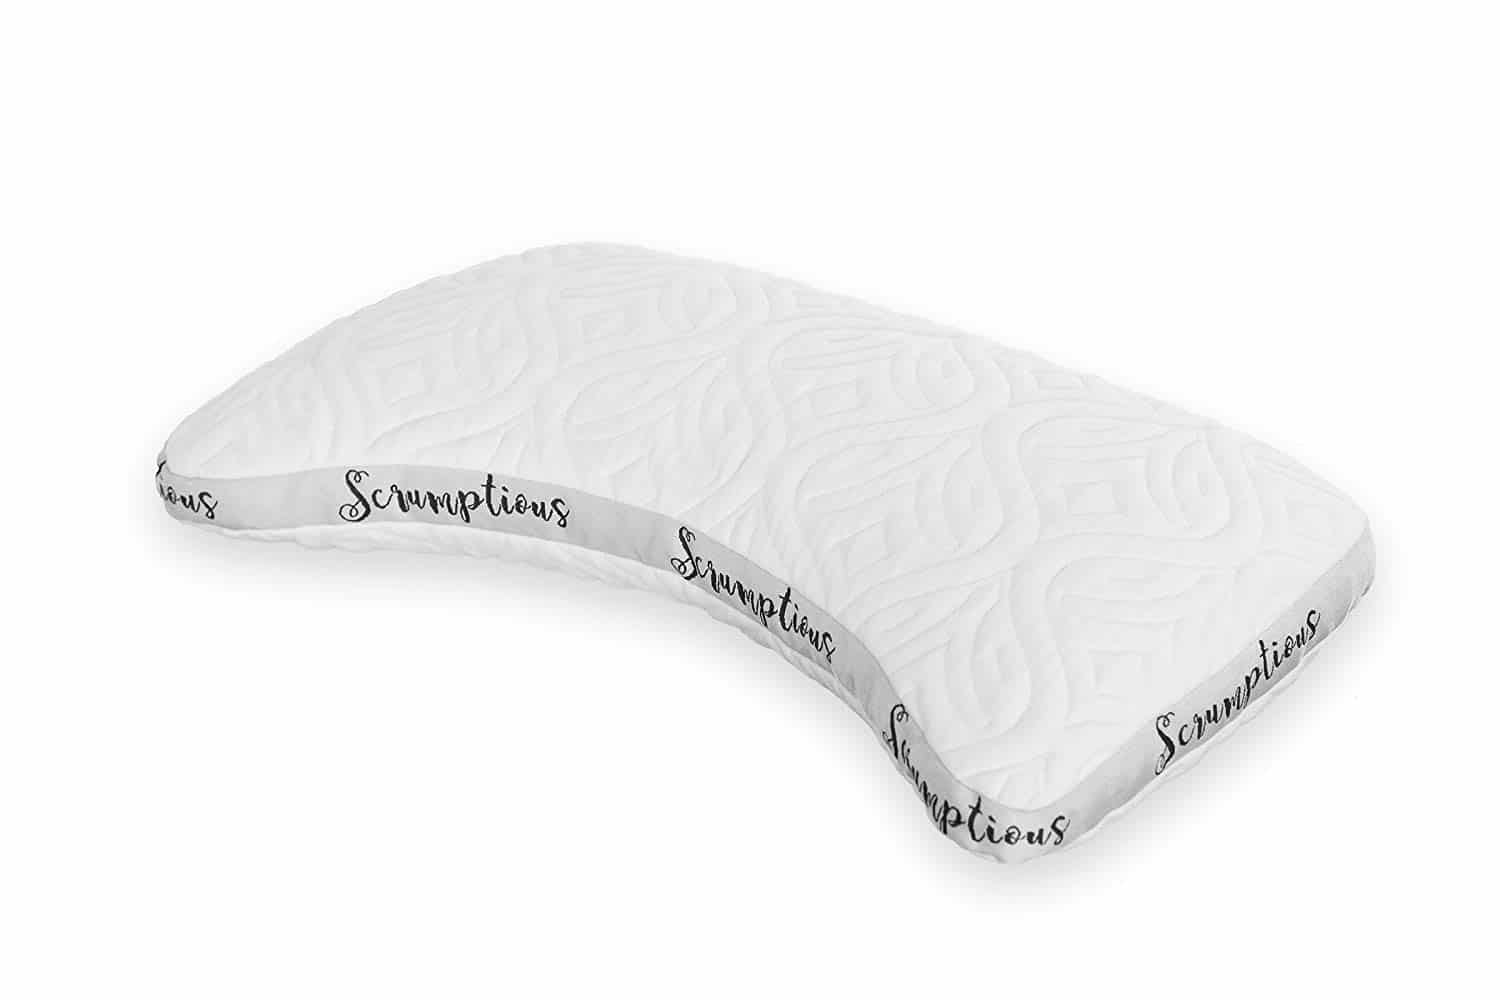 The Scrumptious Side Sleeper Pillow